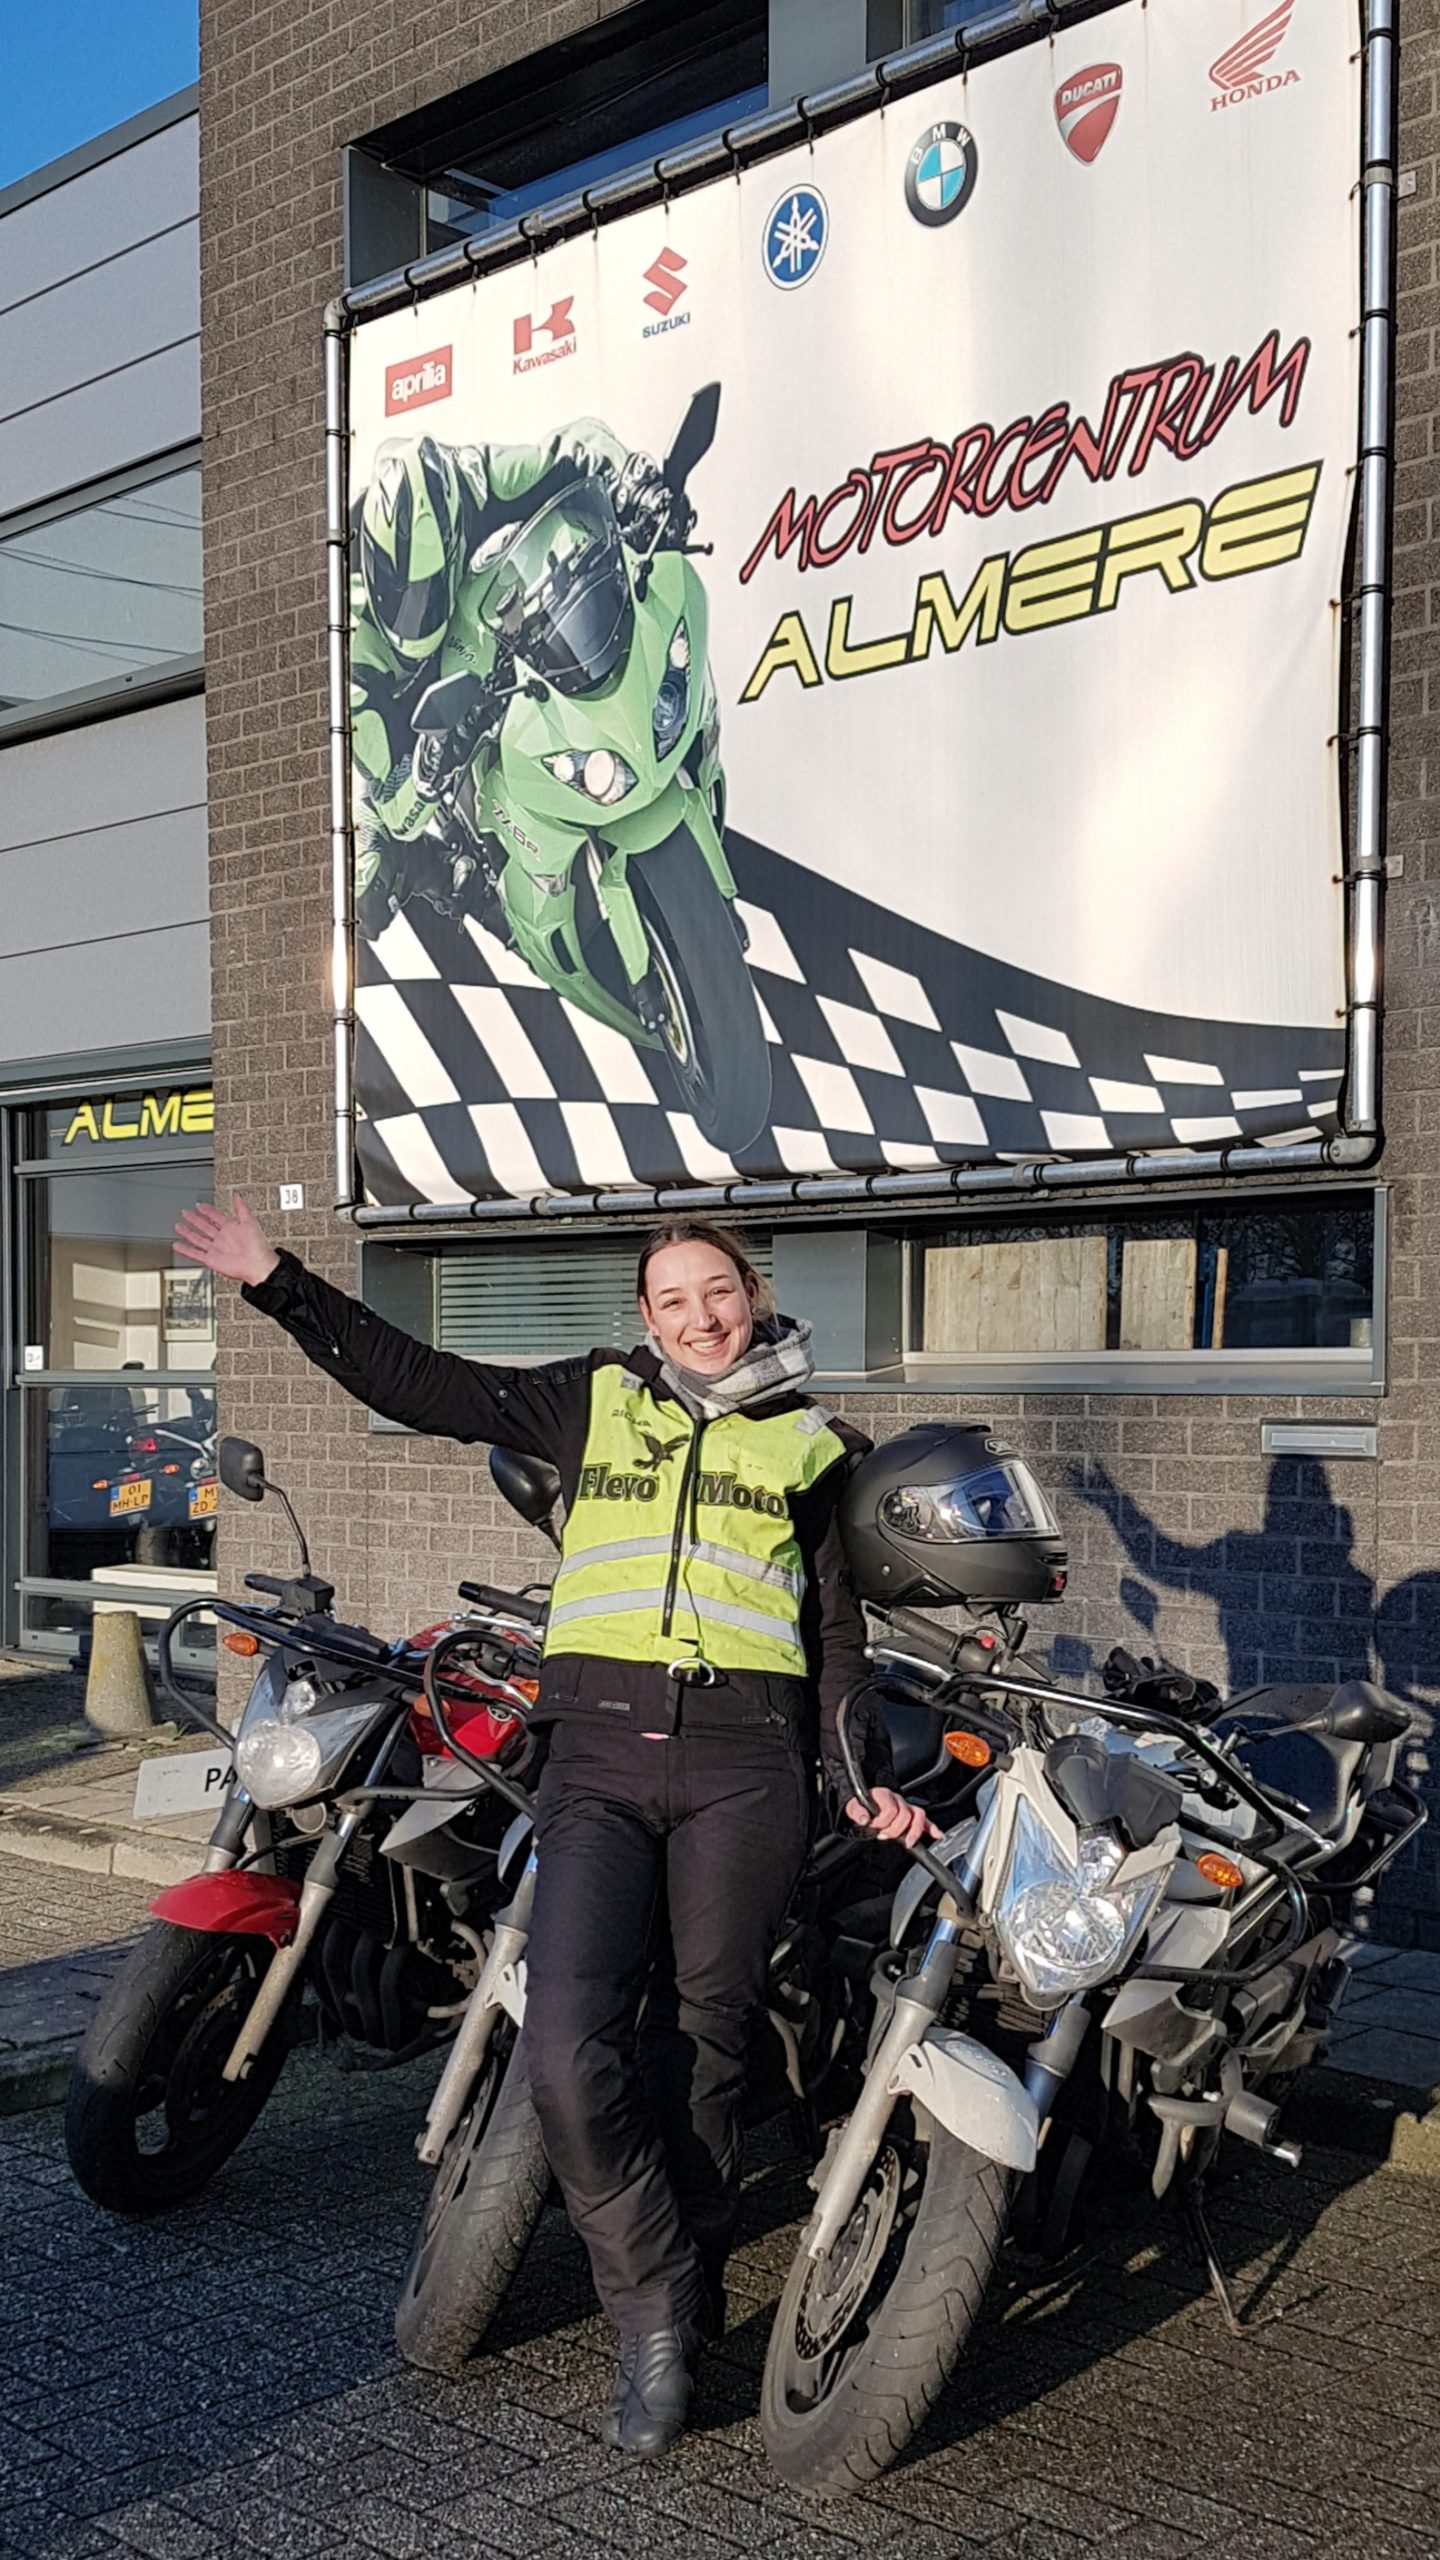 Je motorrijbewijs haal je bij de leukste motorrijschool uit Almere!  Meld je snel aan voor een kennismakingsles! En rij deze zomer op je eigen motor!